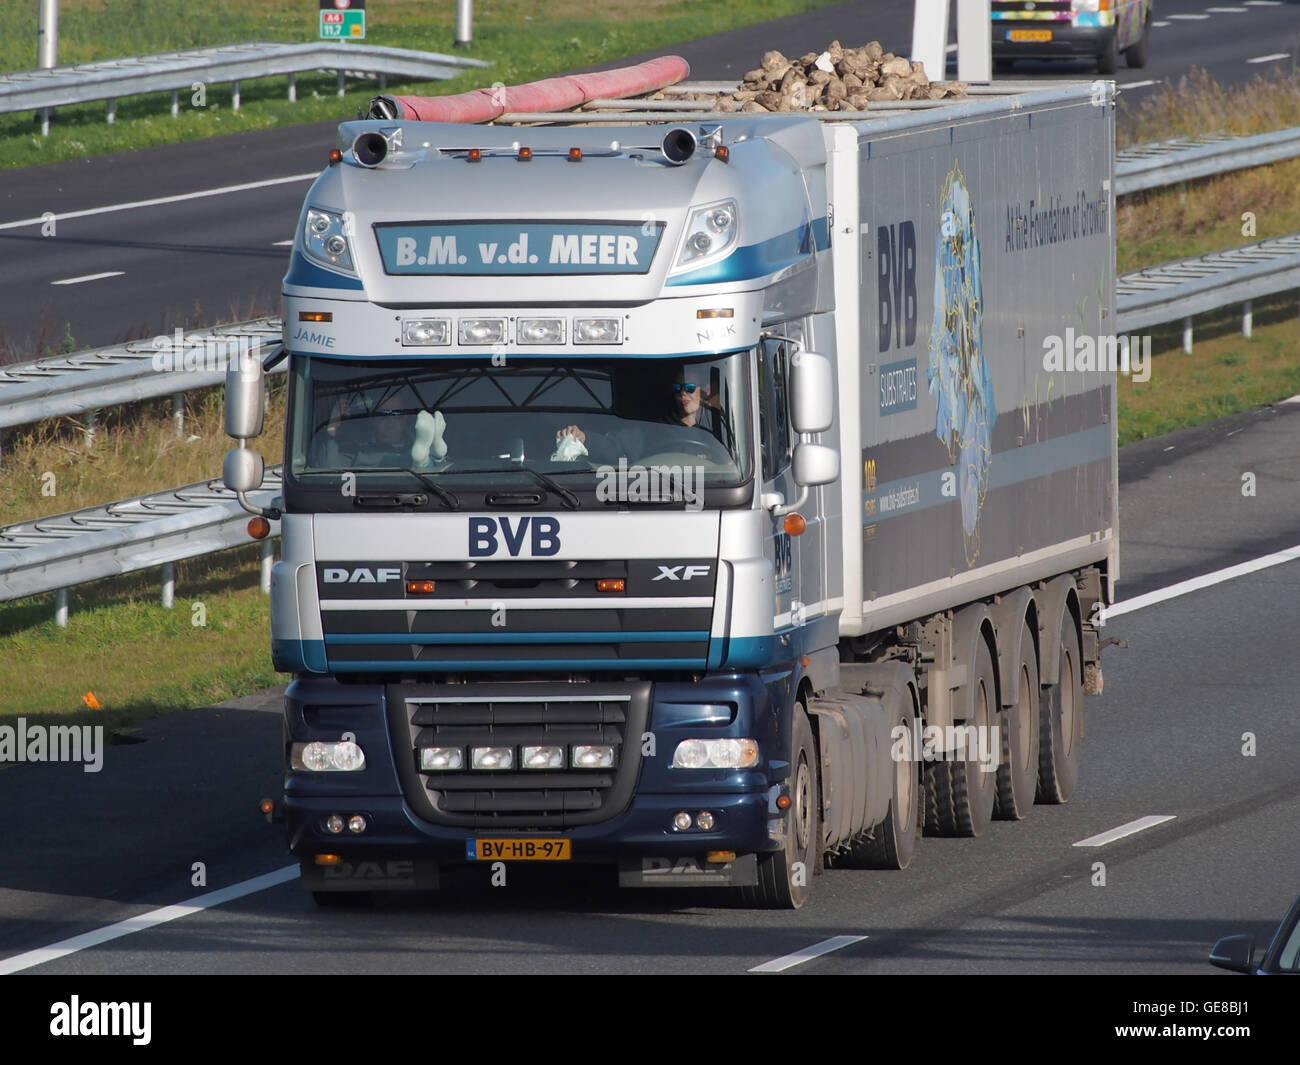 DAF-FX, BM vd Meer, BVB pic1 Stockfoto